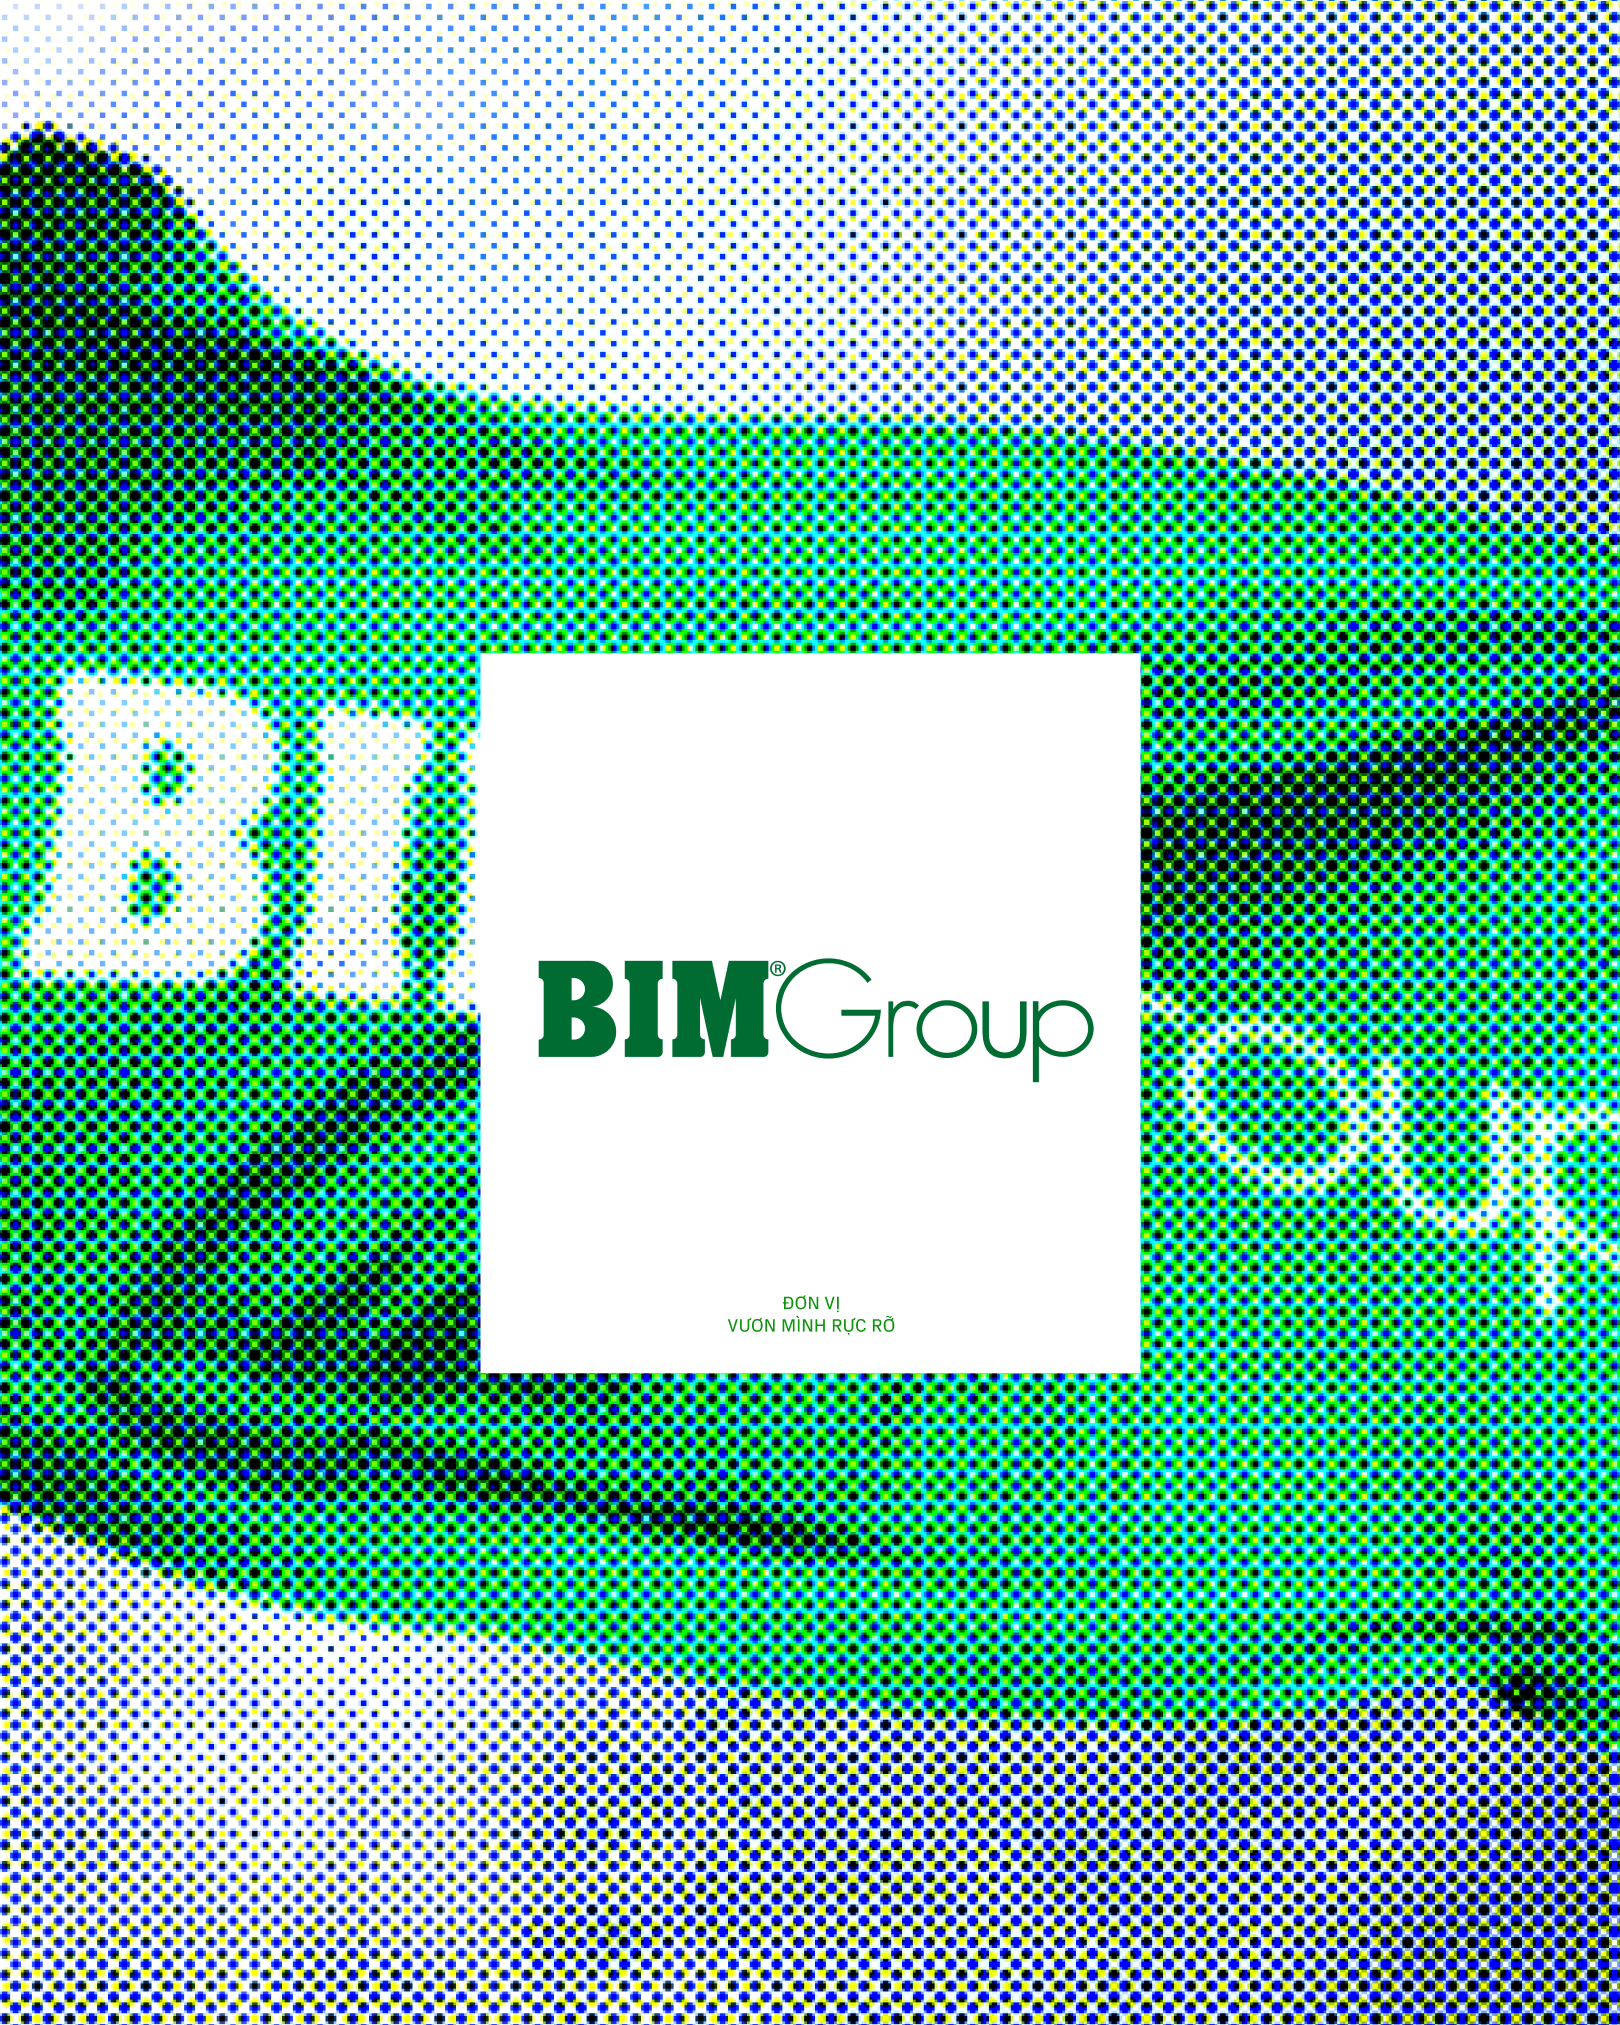 BIM Group đồng hành cùng sự phát triển bền vững của đất nước